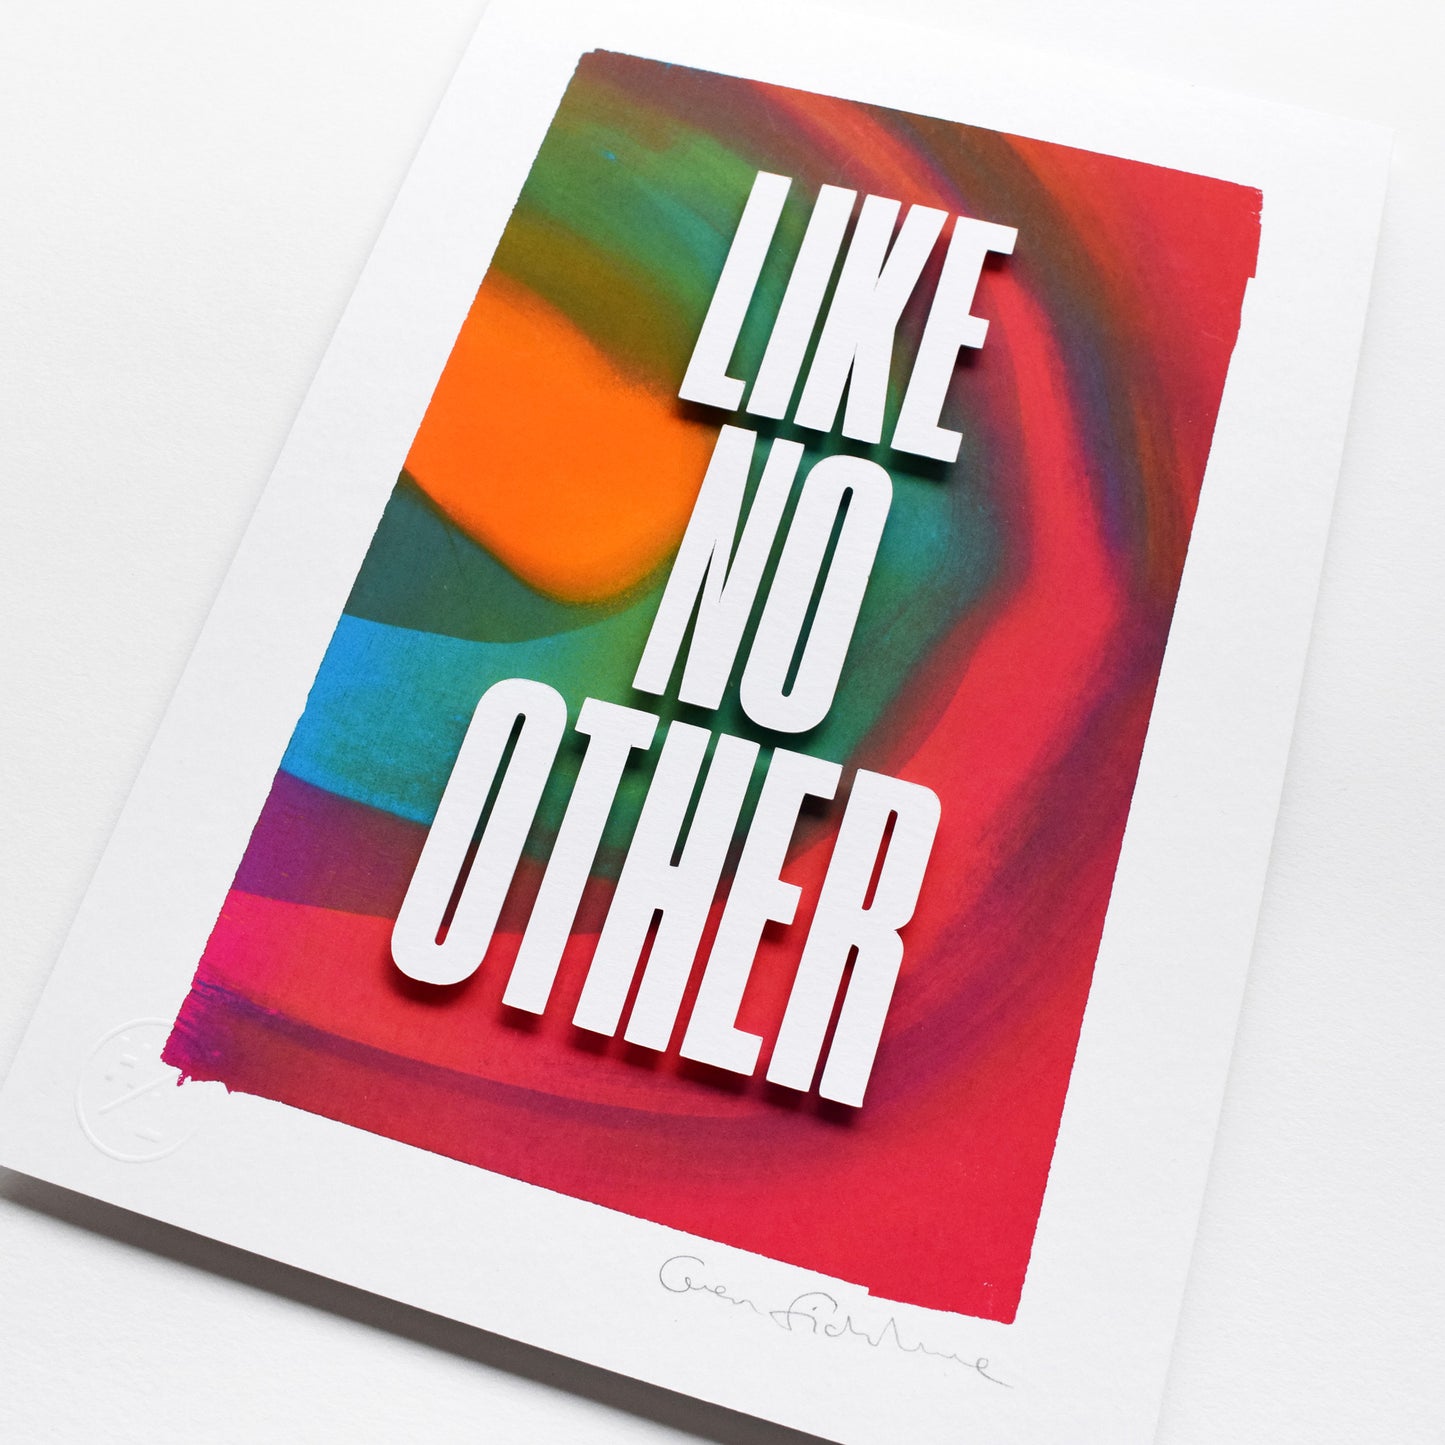 Like No Other — 'Like No Other' Framed Original Artwork